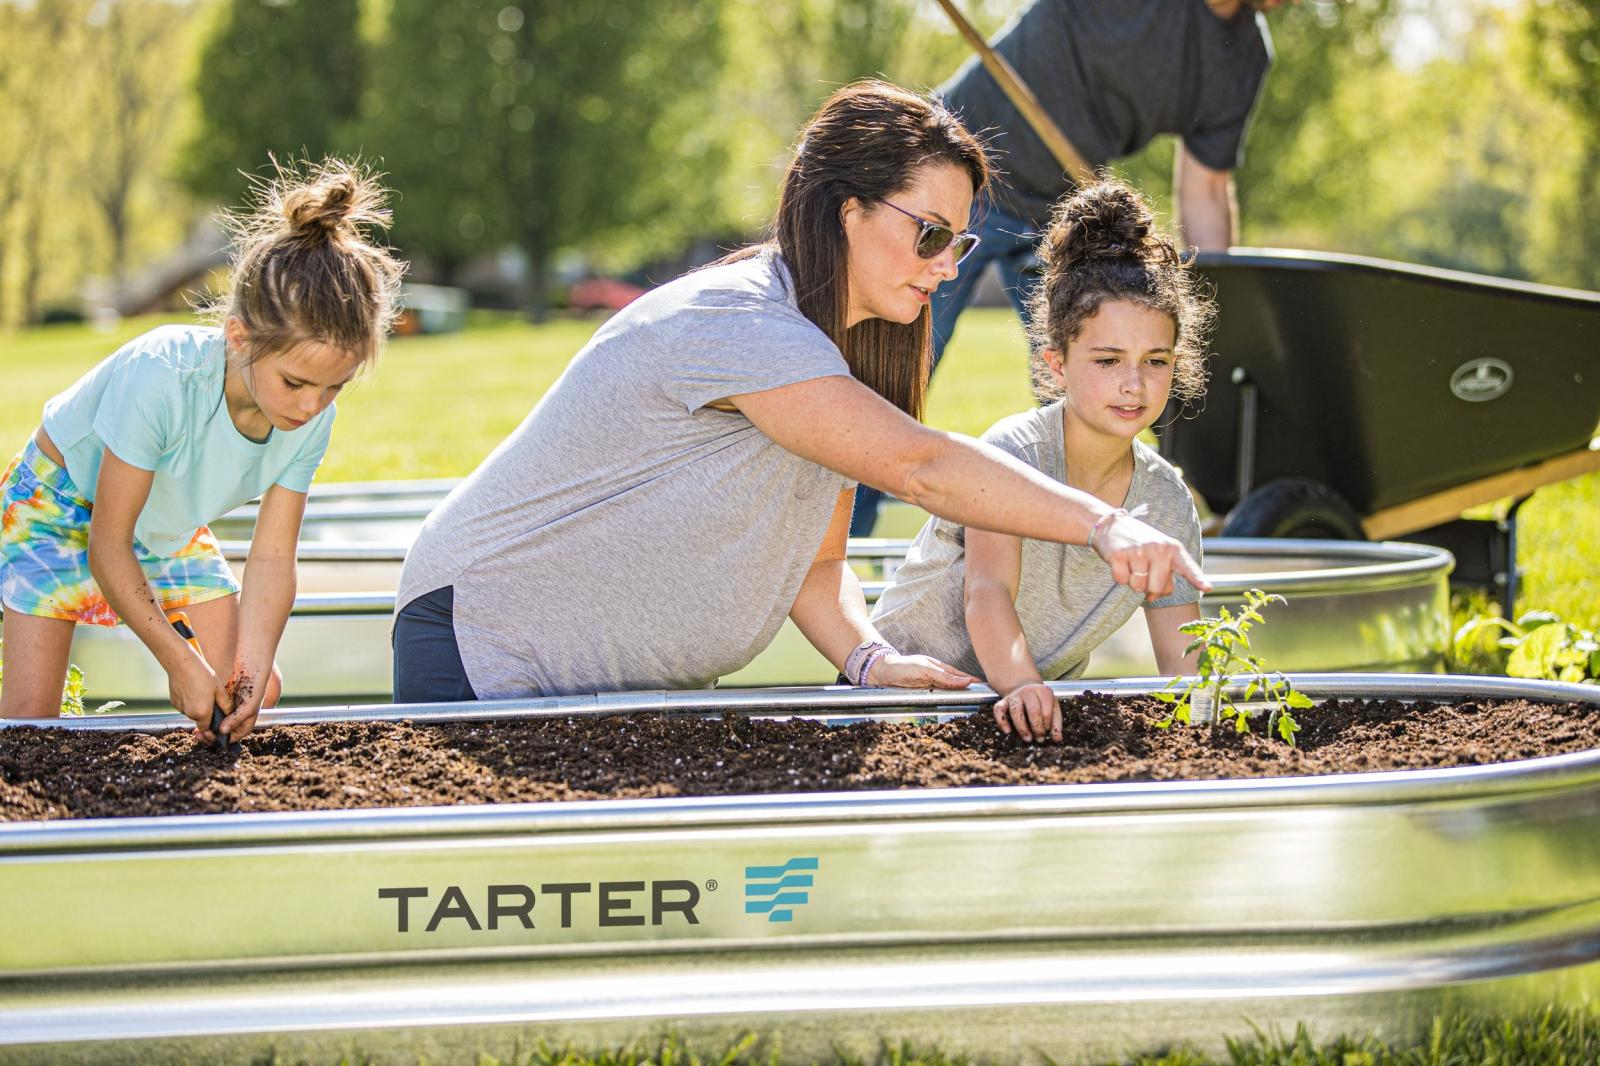 Tarter Raised Bed Garden Planter